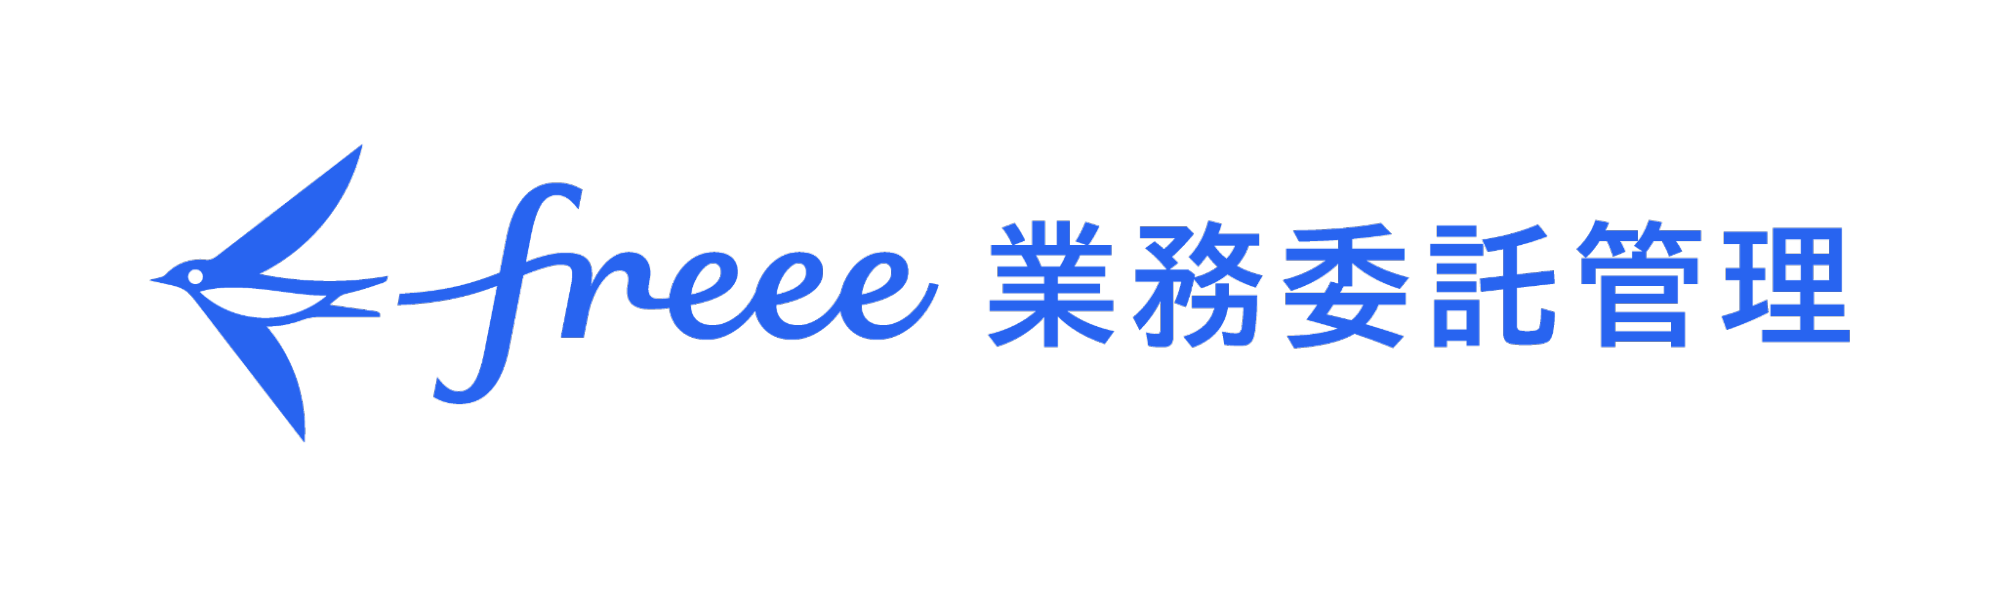 「freee業務委託管理」ロゴ画像